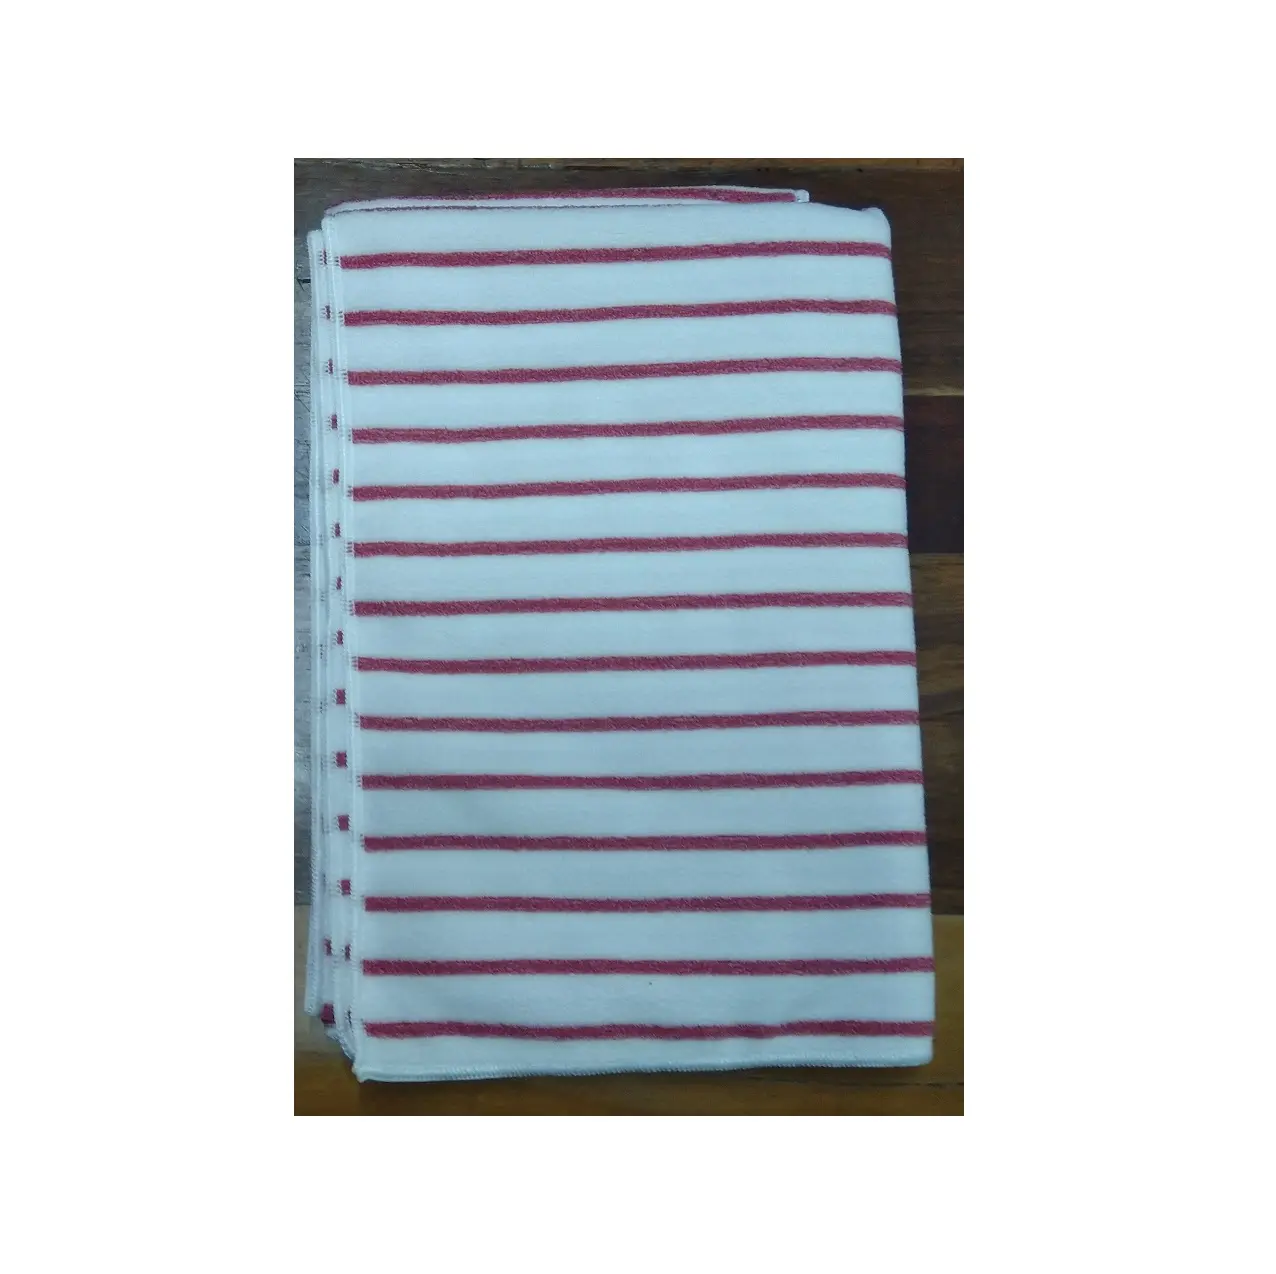 La migliore vendita di alta qualità asciugamani da bagno in microfibra filato tinto in poliestere 100% telo da bagno da esportatore indiano e fornitore